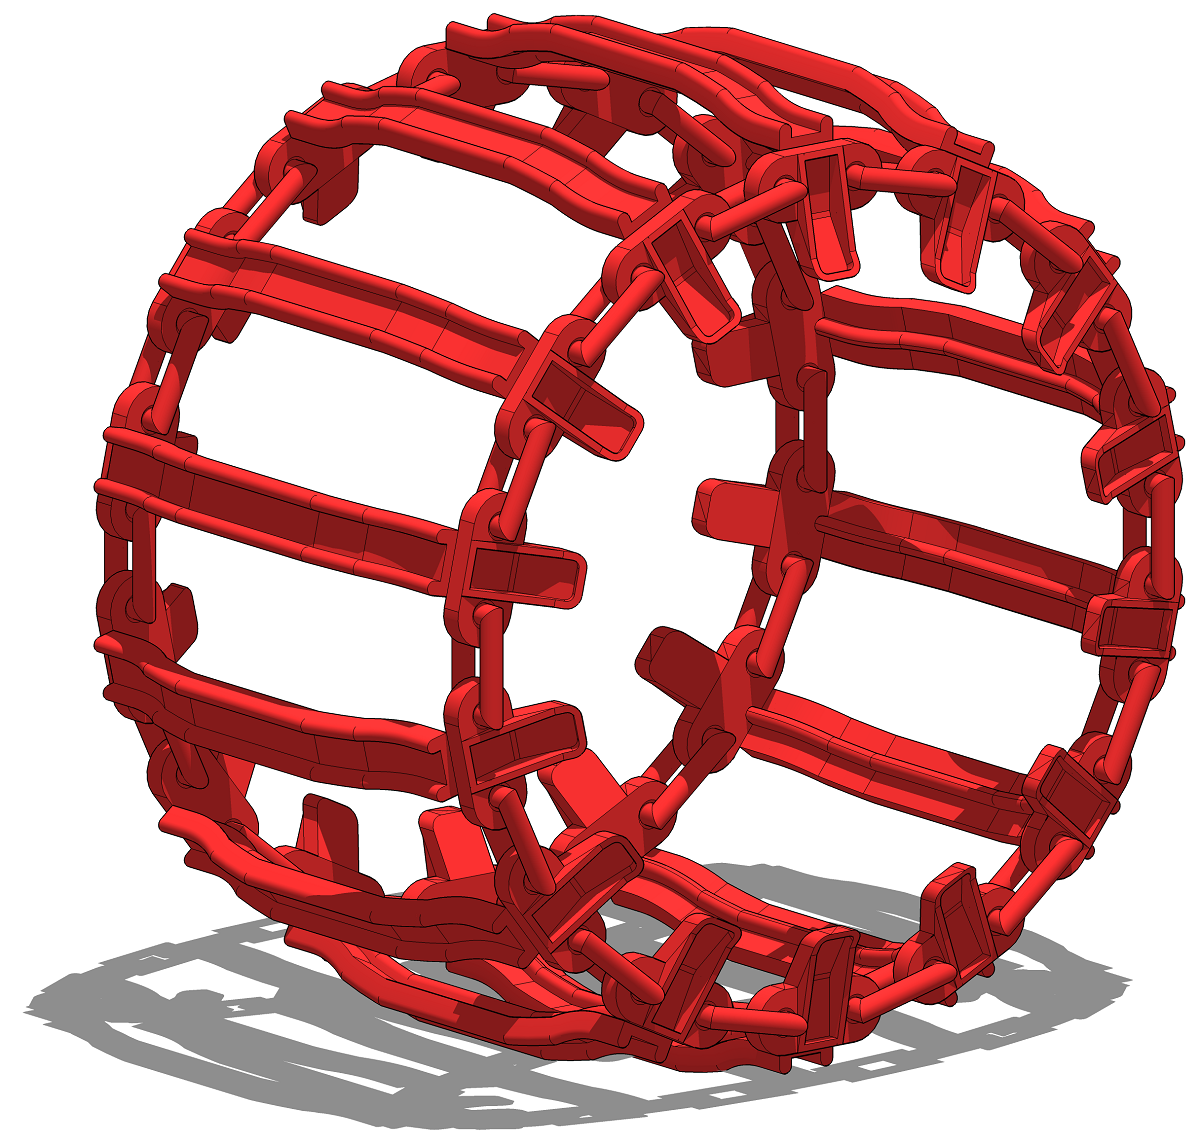 3D модель моно-гусеницы (моногусеницы) для спецтехники: харвестеров, форвардеров, скиддеров и пр.